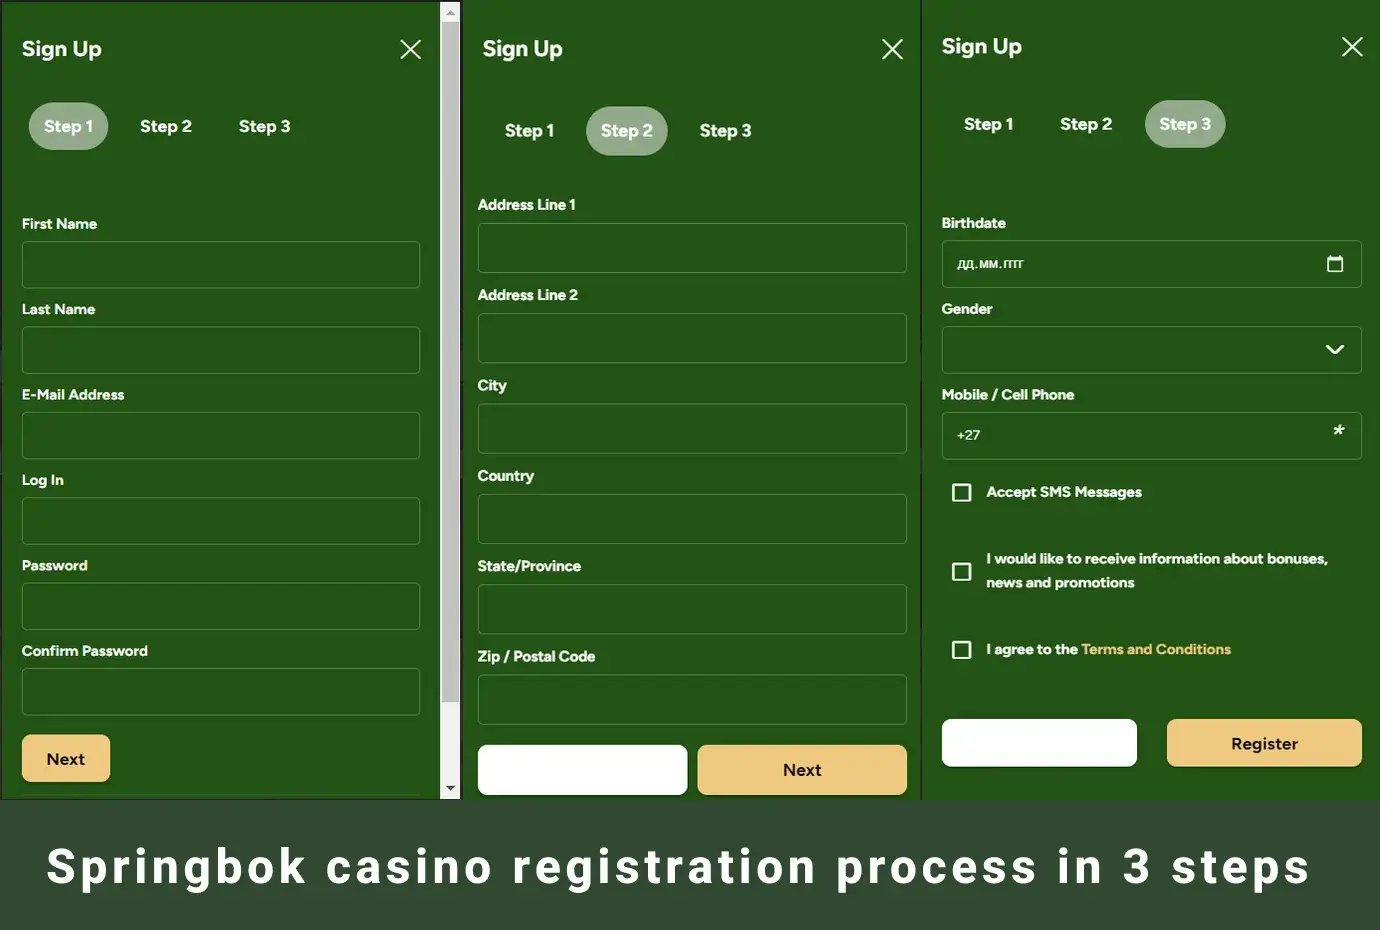 Springbok casino registration process in 3 steps